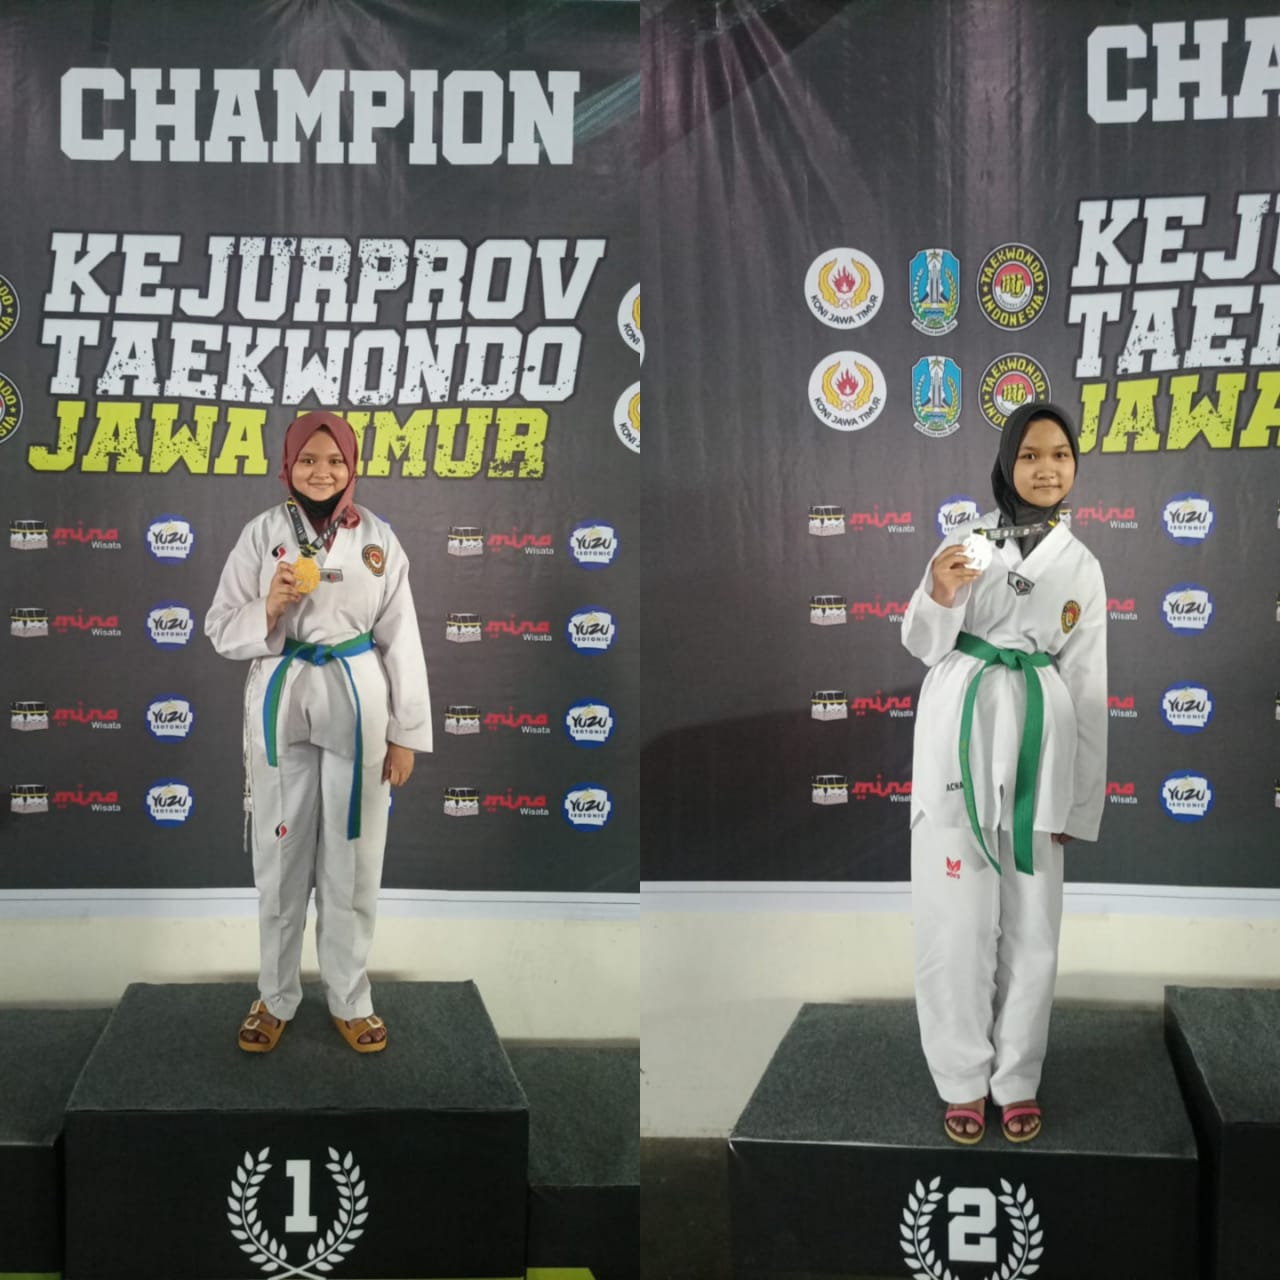 2 Atlet MTsN 1 Sidoarjo Sabet Juara, dalam Kejurprov Taekwondo Jatim